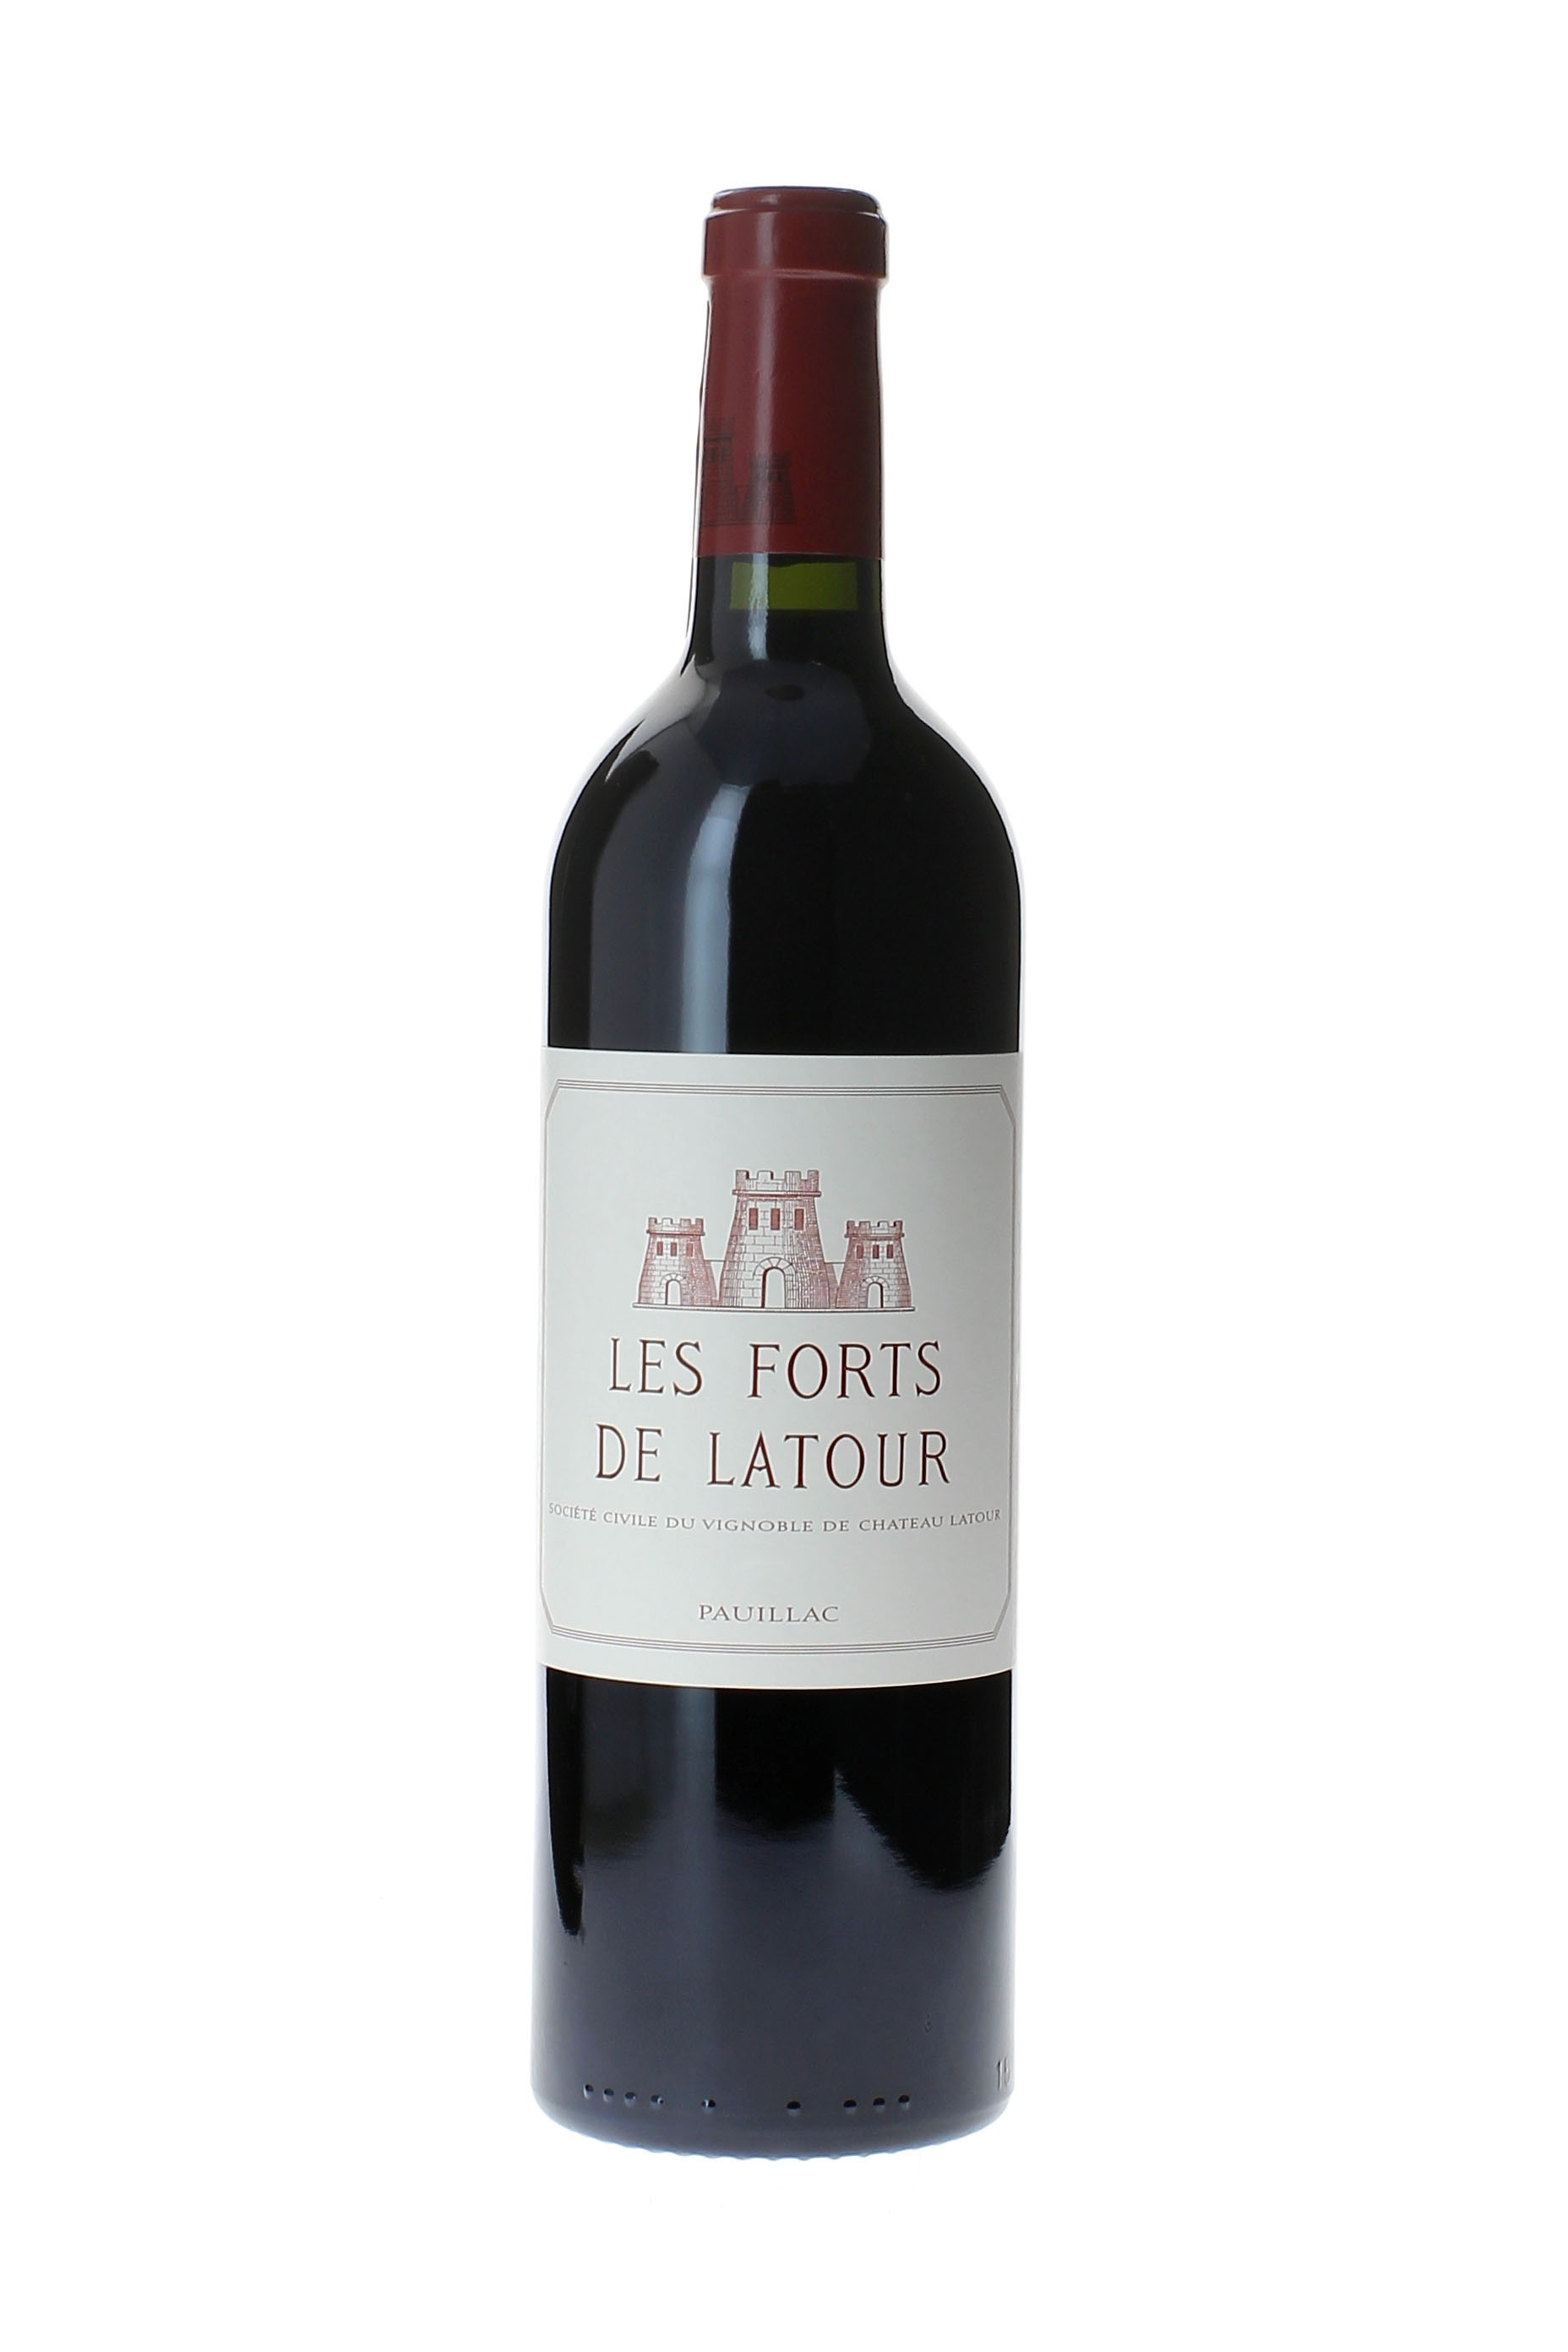 Forts de latour 1986 2me vin de LATOUR Pauillac, Bordeaux rouge